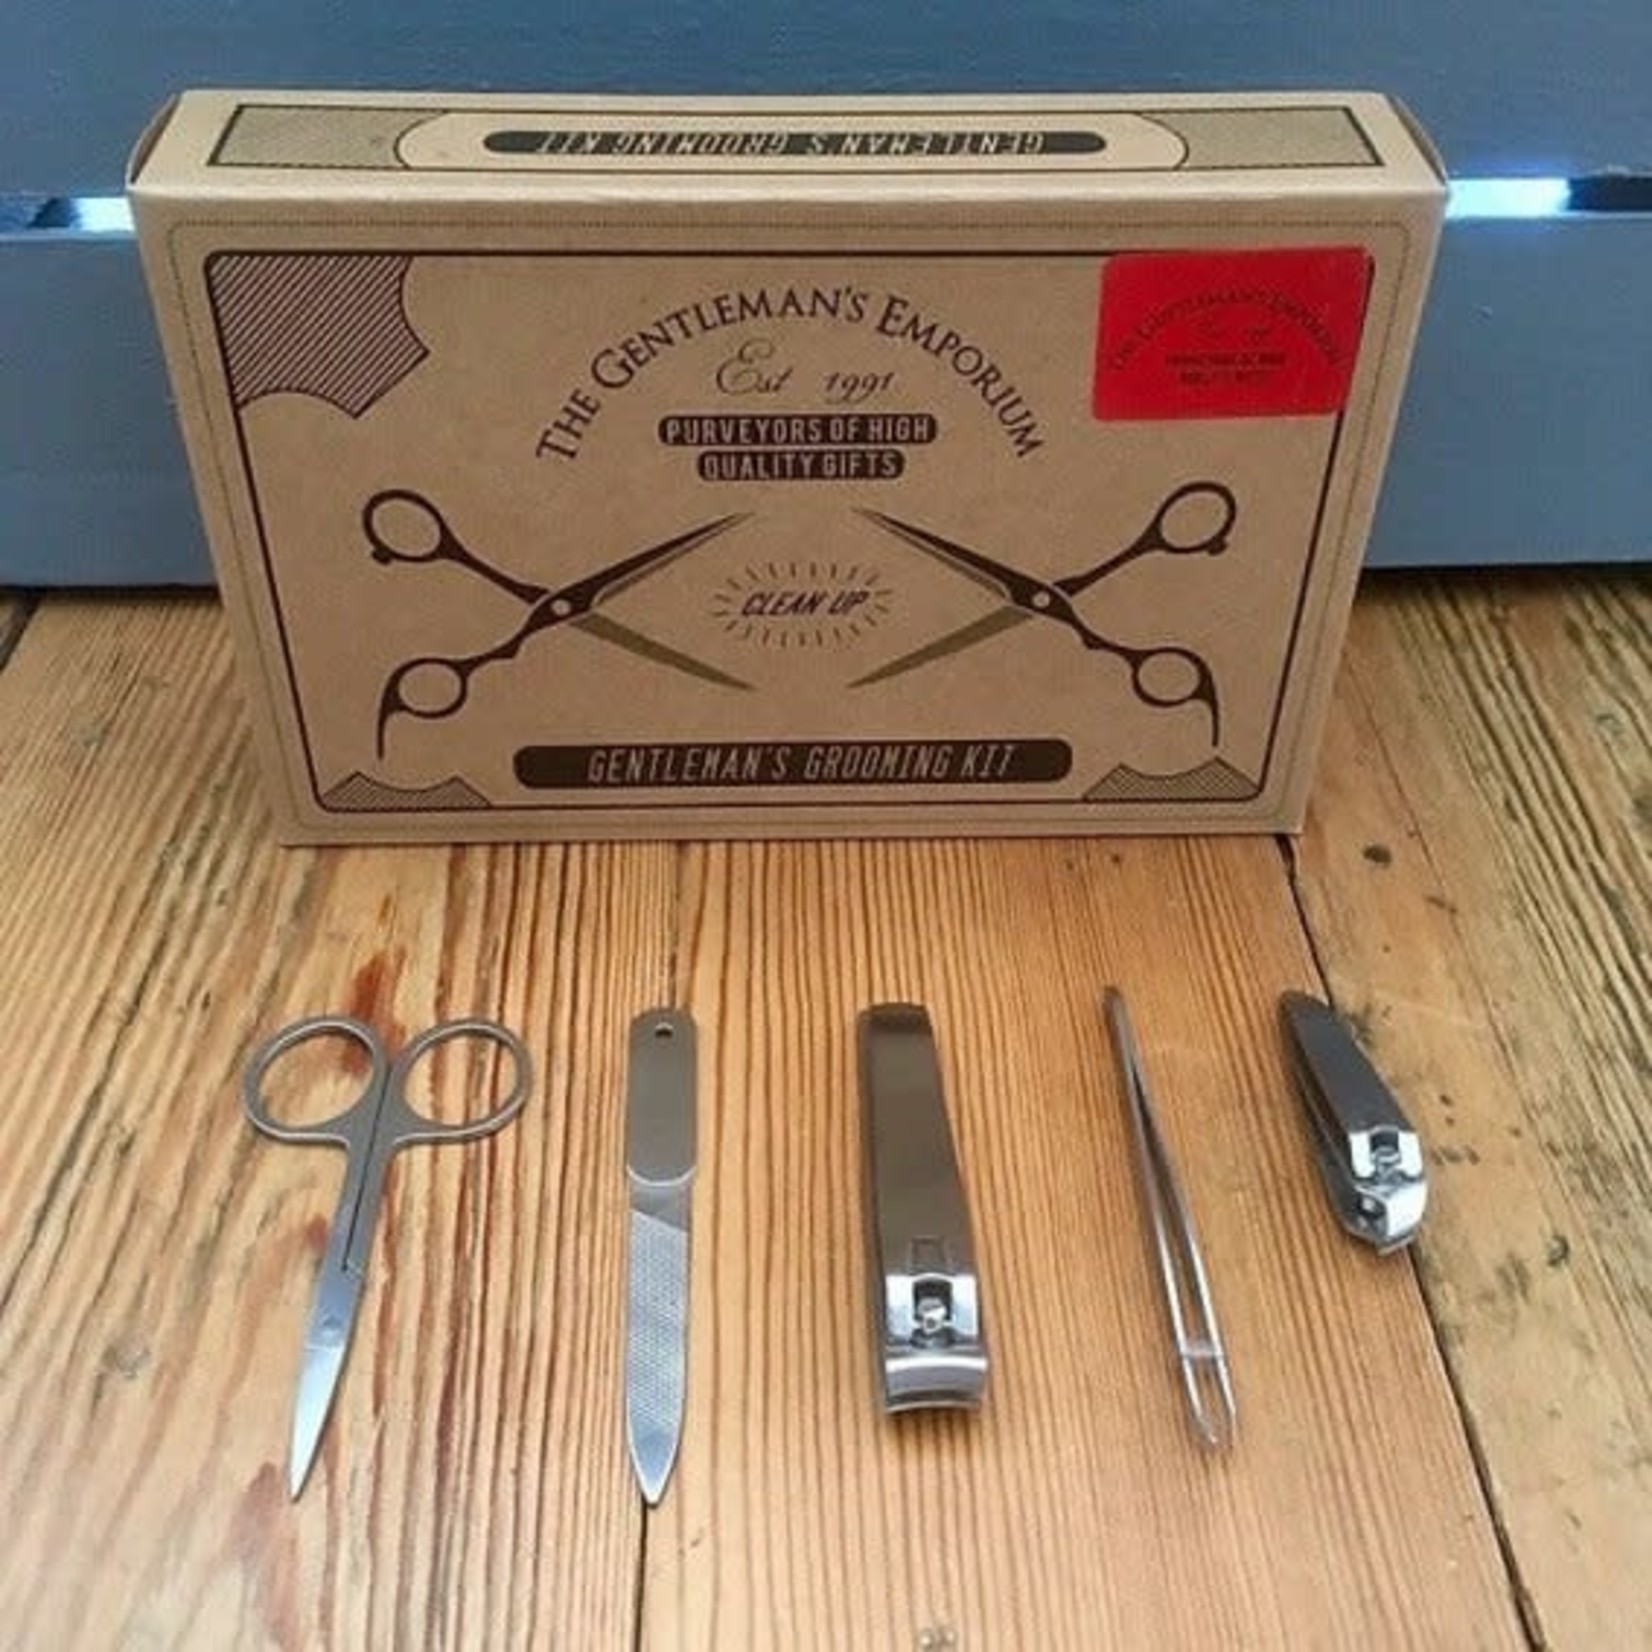 Gentlemen's Grooming Kit